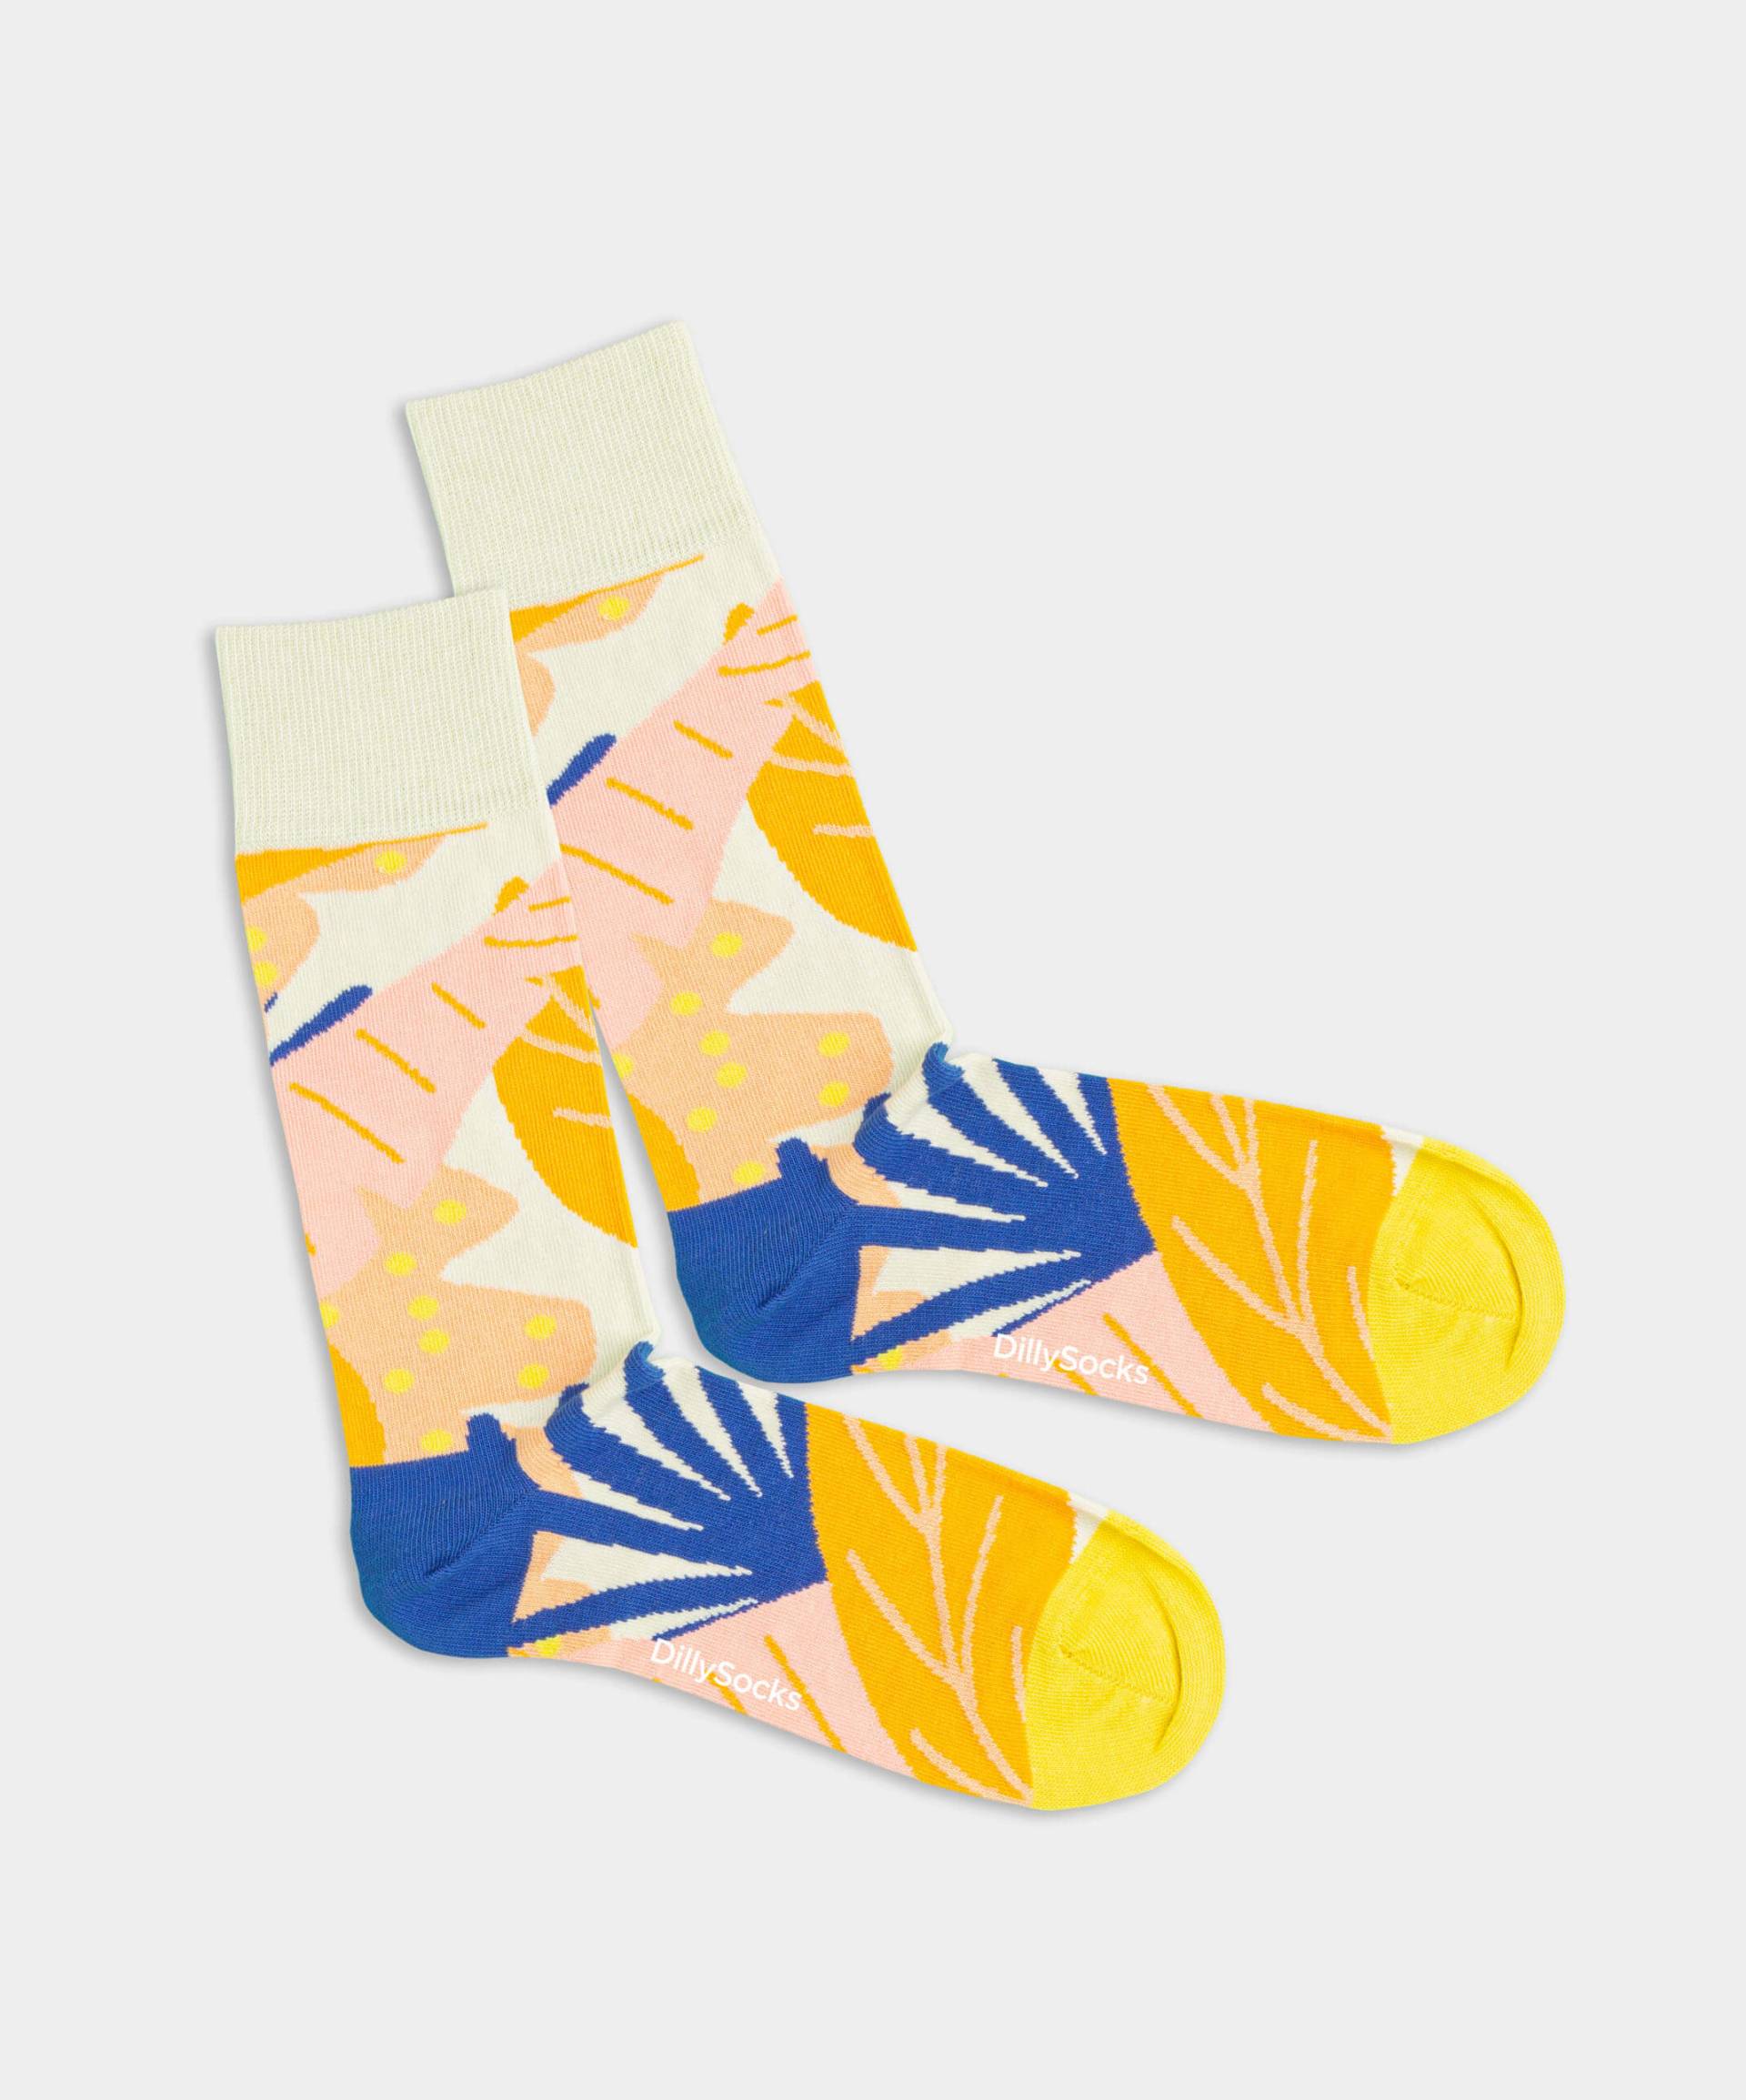 - Socken in Gelb mit Pflanze Motiv/Muster von DillySocks